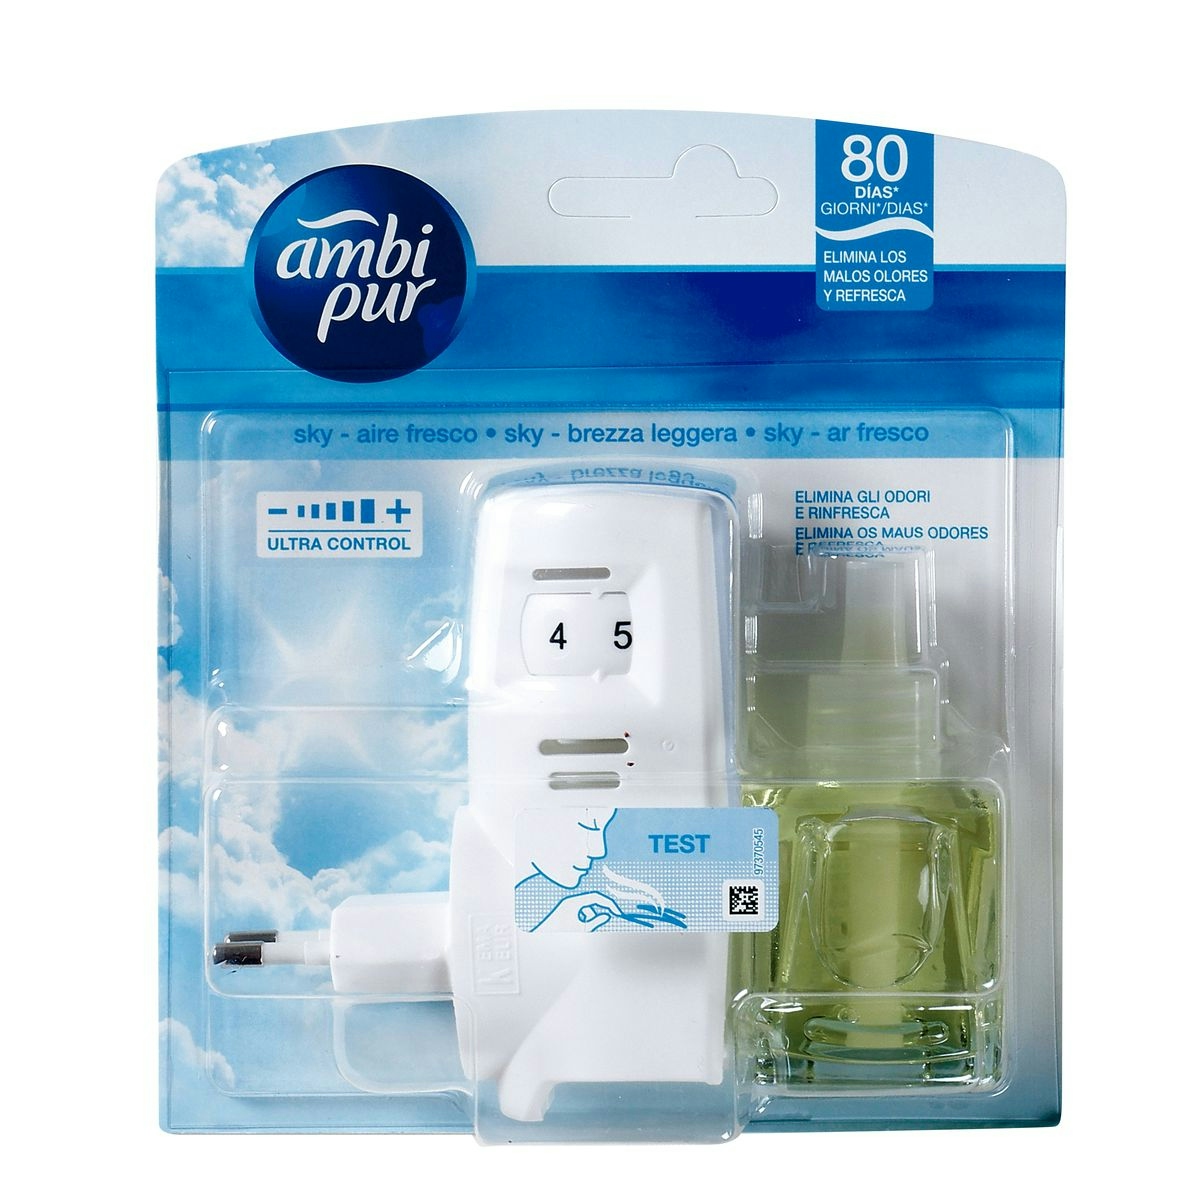 Ambientador eléctrico AMBI PUR aroma aire fresco aparato + recambio 1 ud